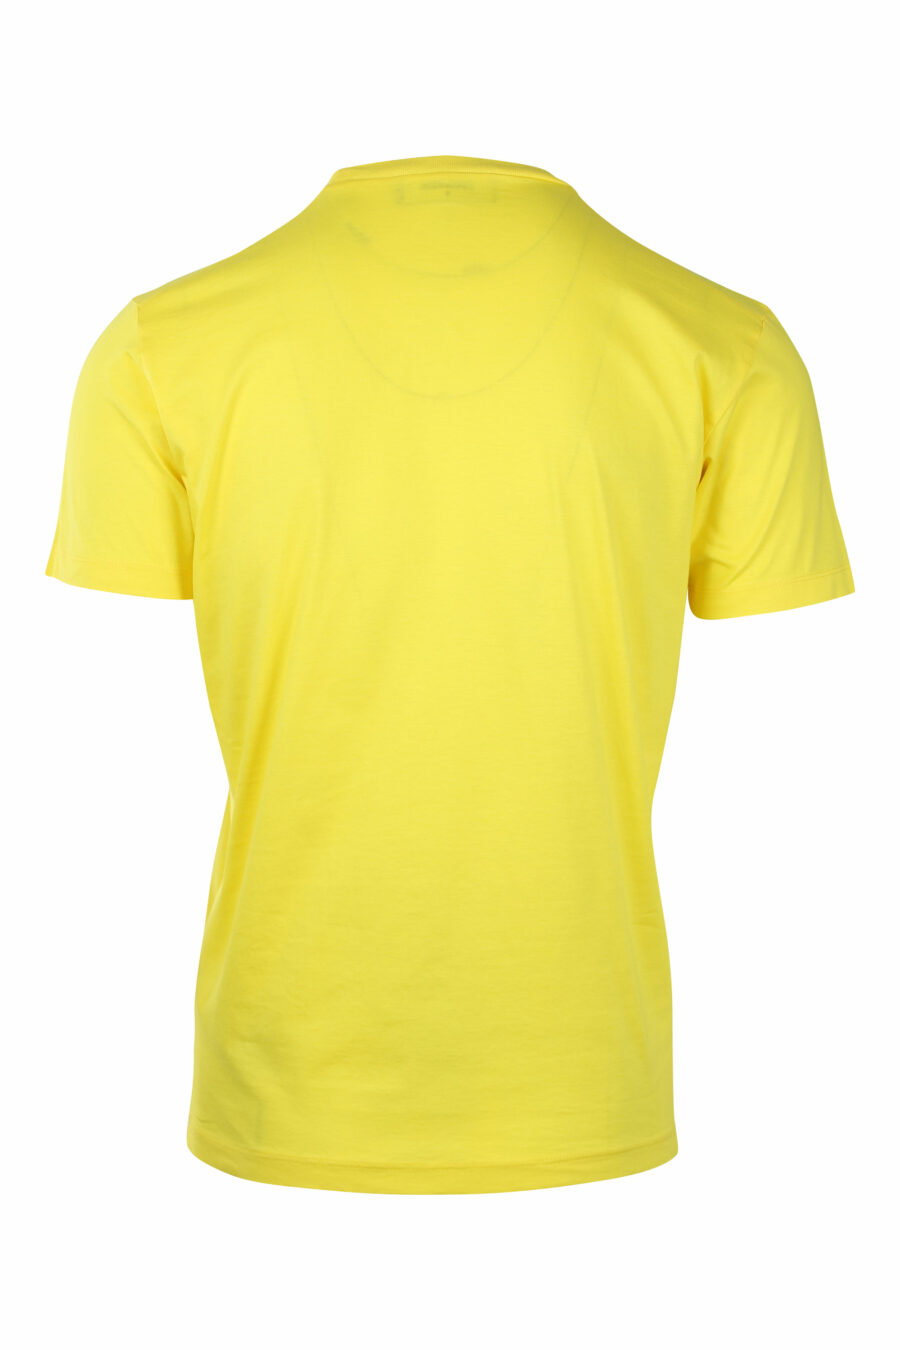 T-shirt amarela com logótipo duplo "ícone" branco - IMG 1406